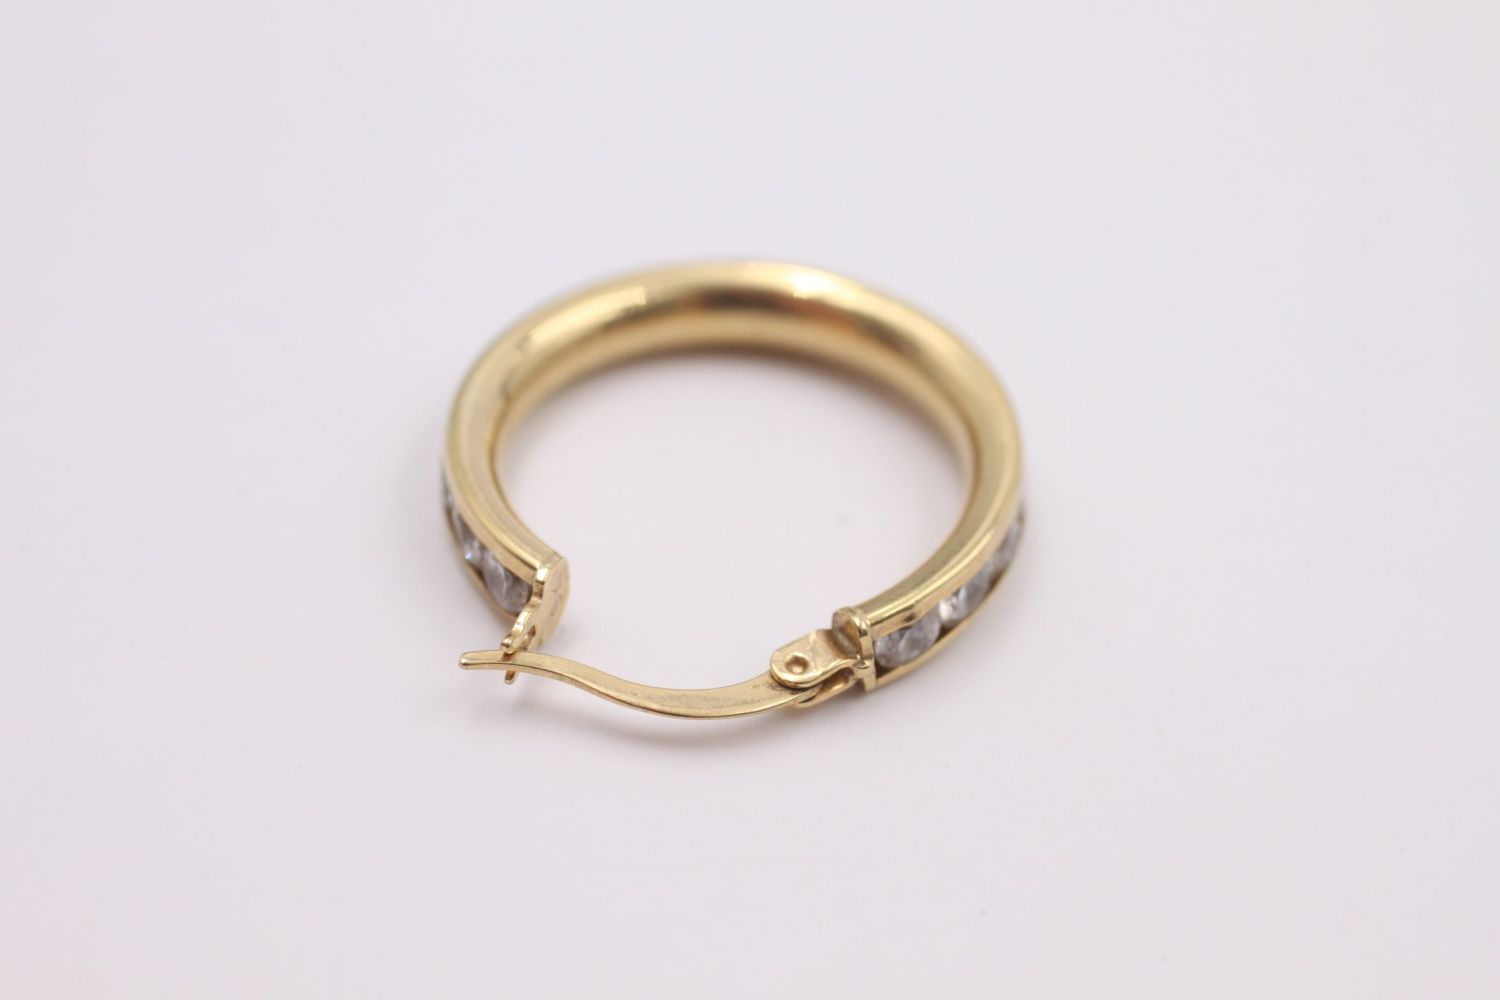 9ct gold gemstone detail hoop earrings 3.7 grams gross - Image 5 of 5